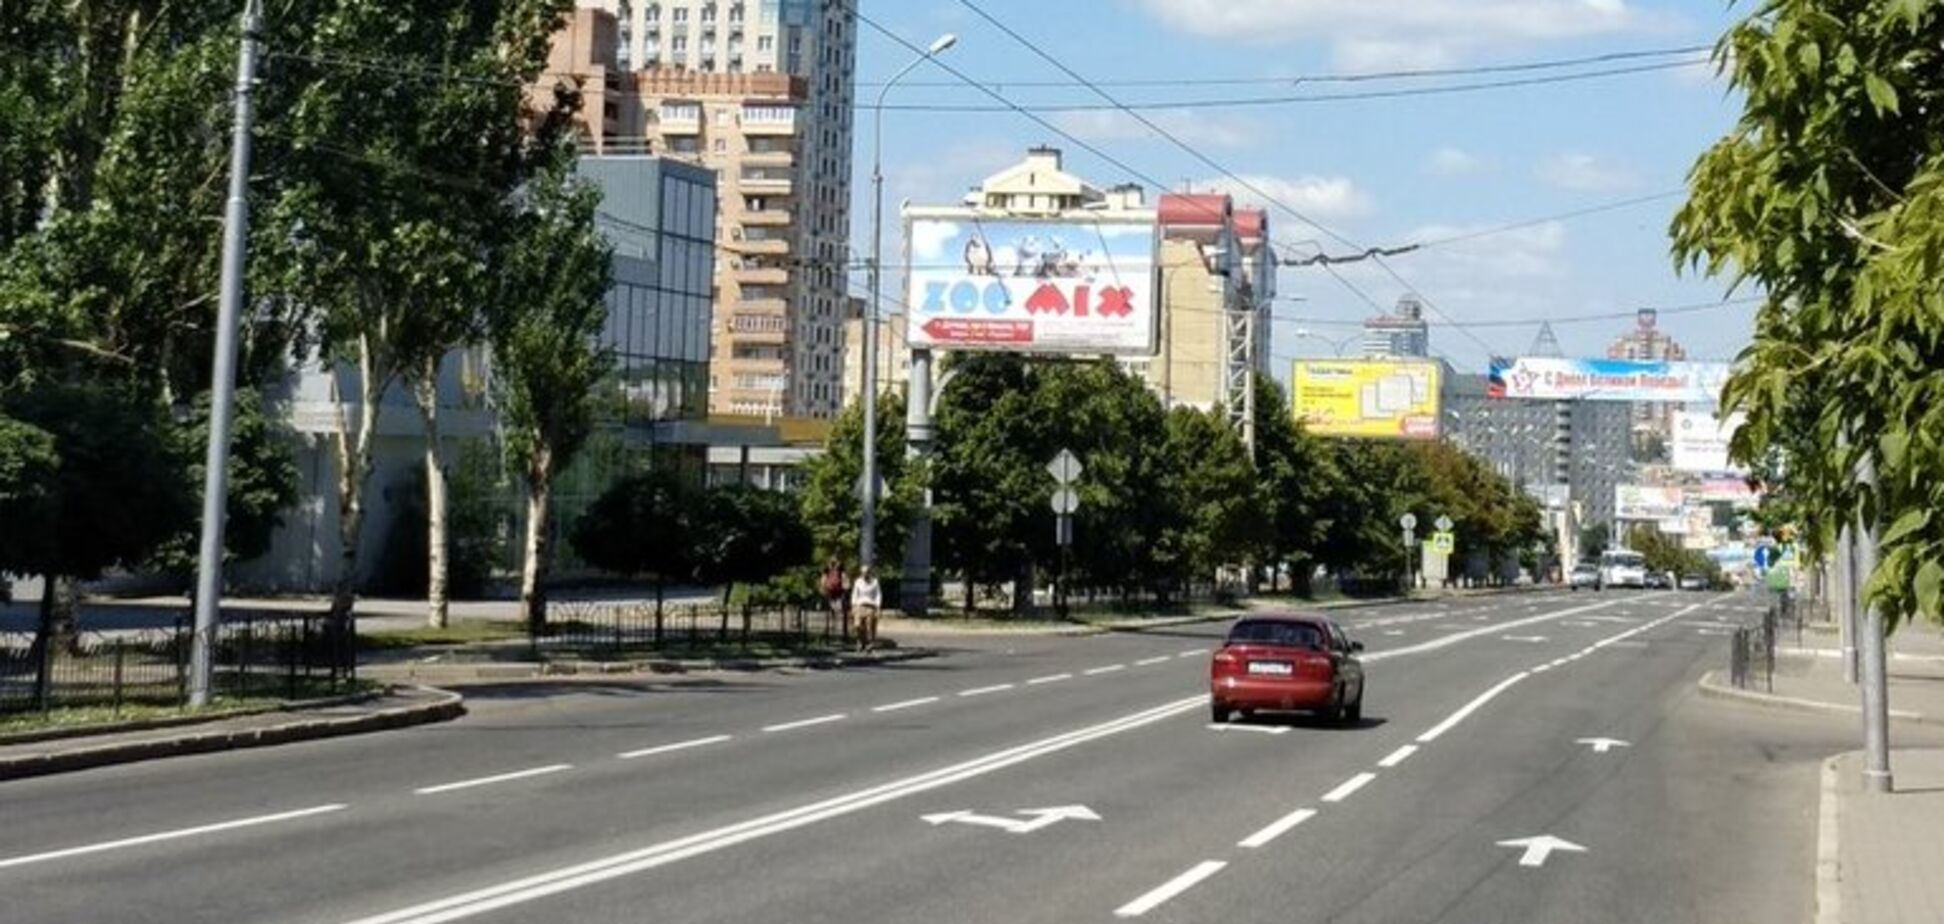 'Ж*па повна!' У мережі показали нові фото з Донецька